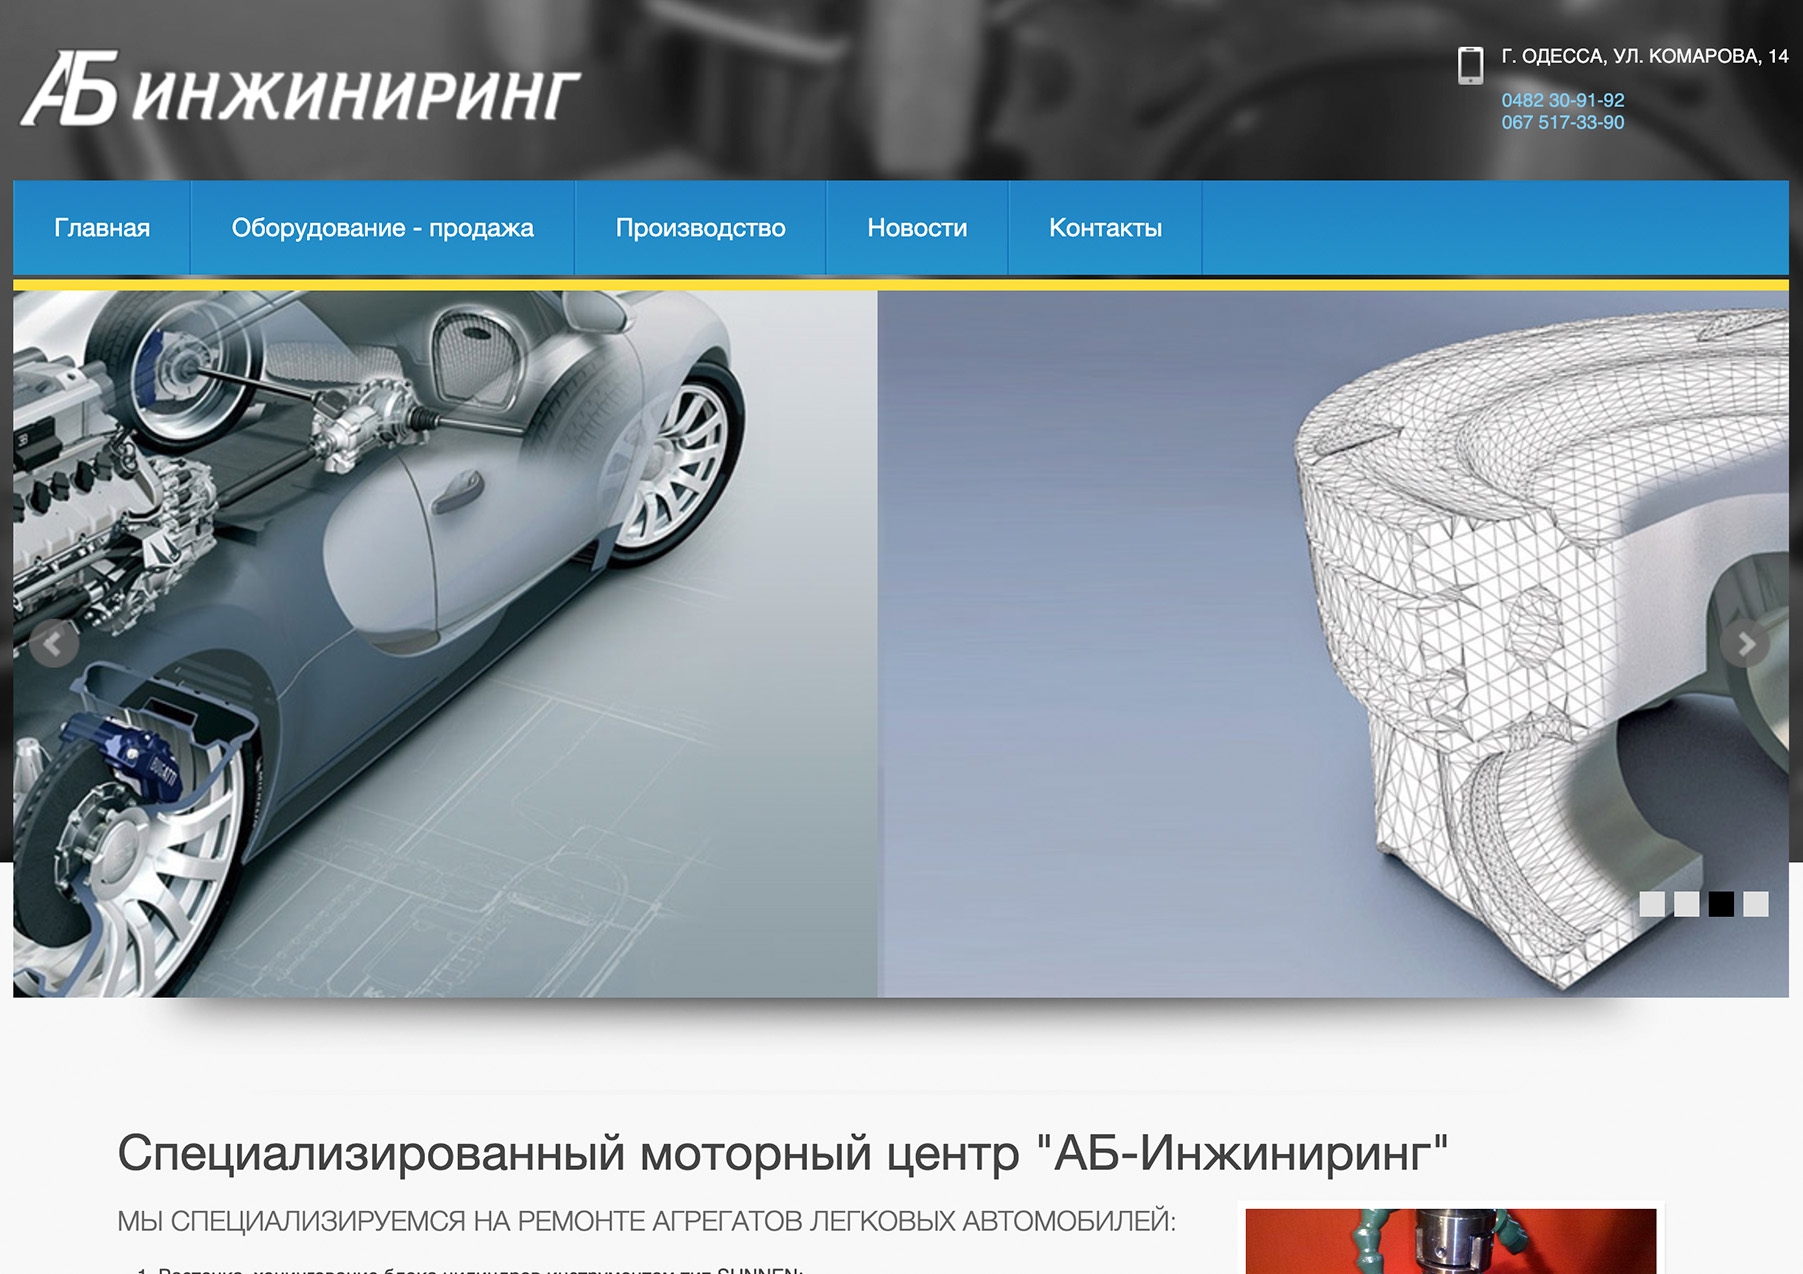 www.ab-engine.net.ua